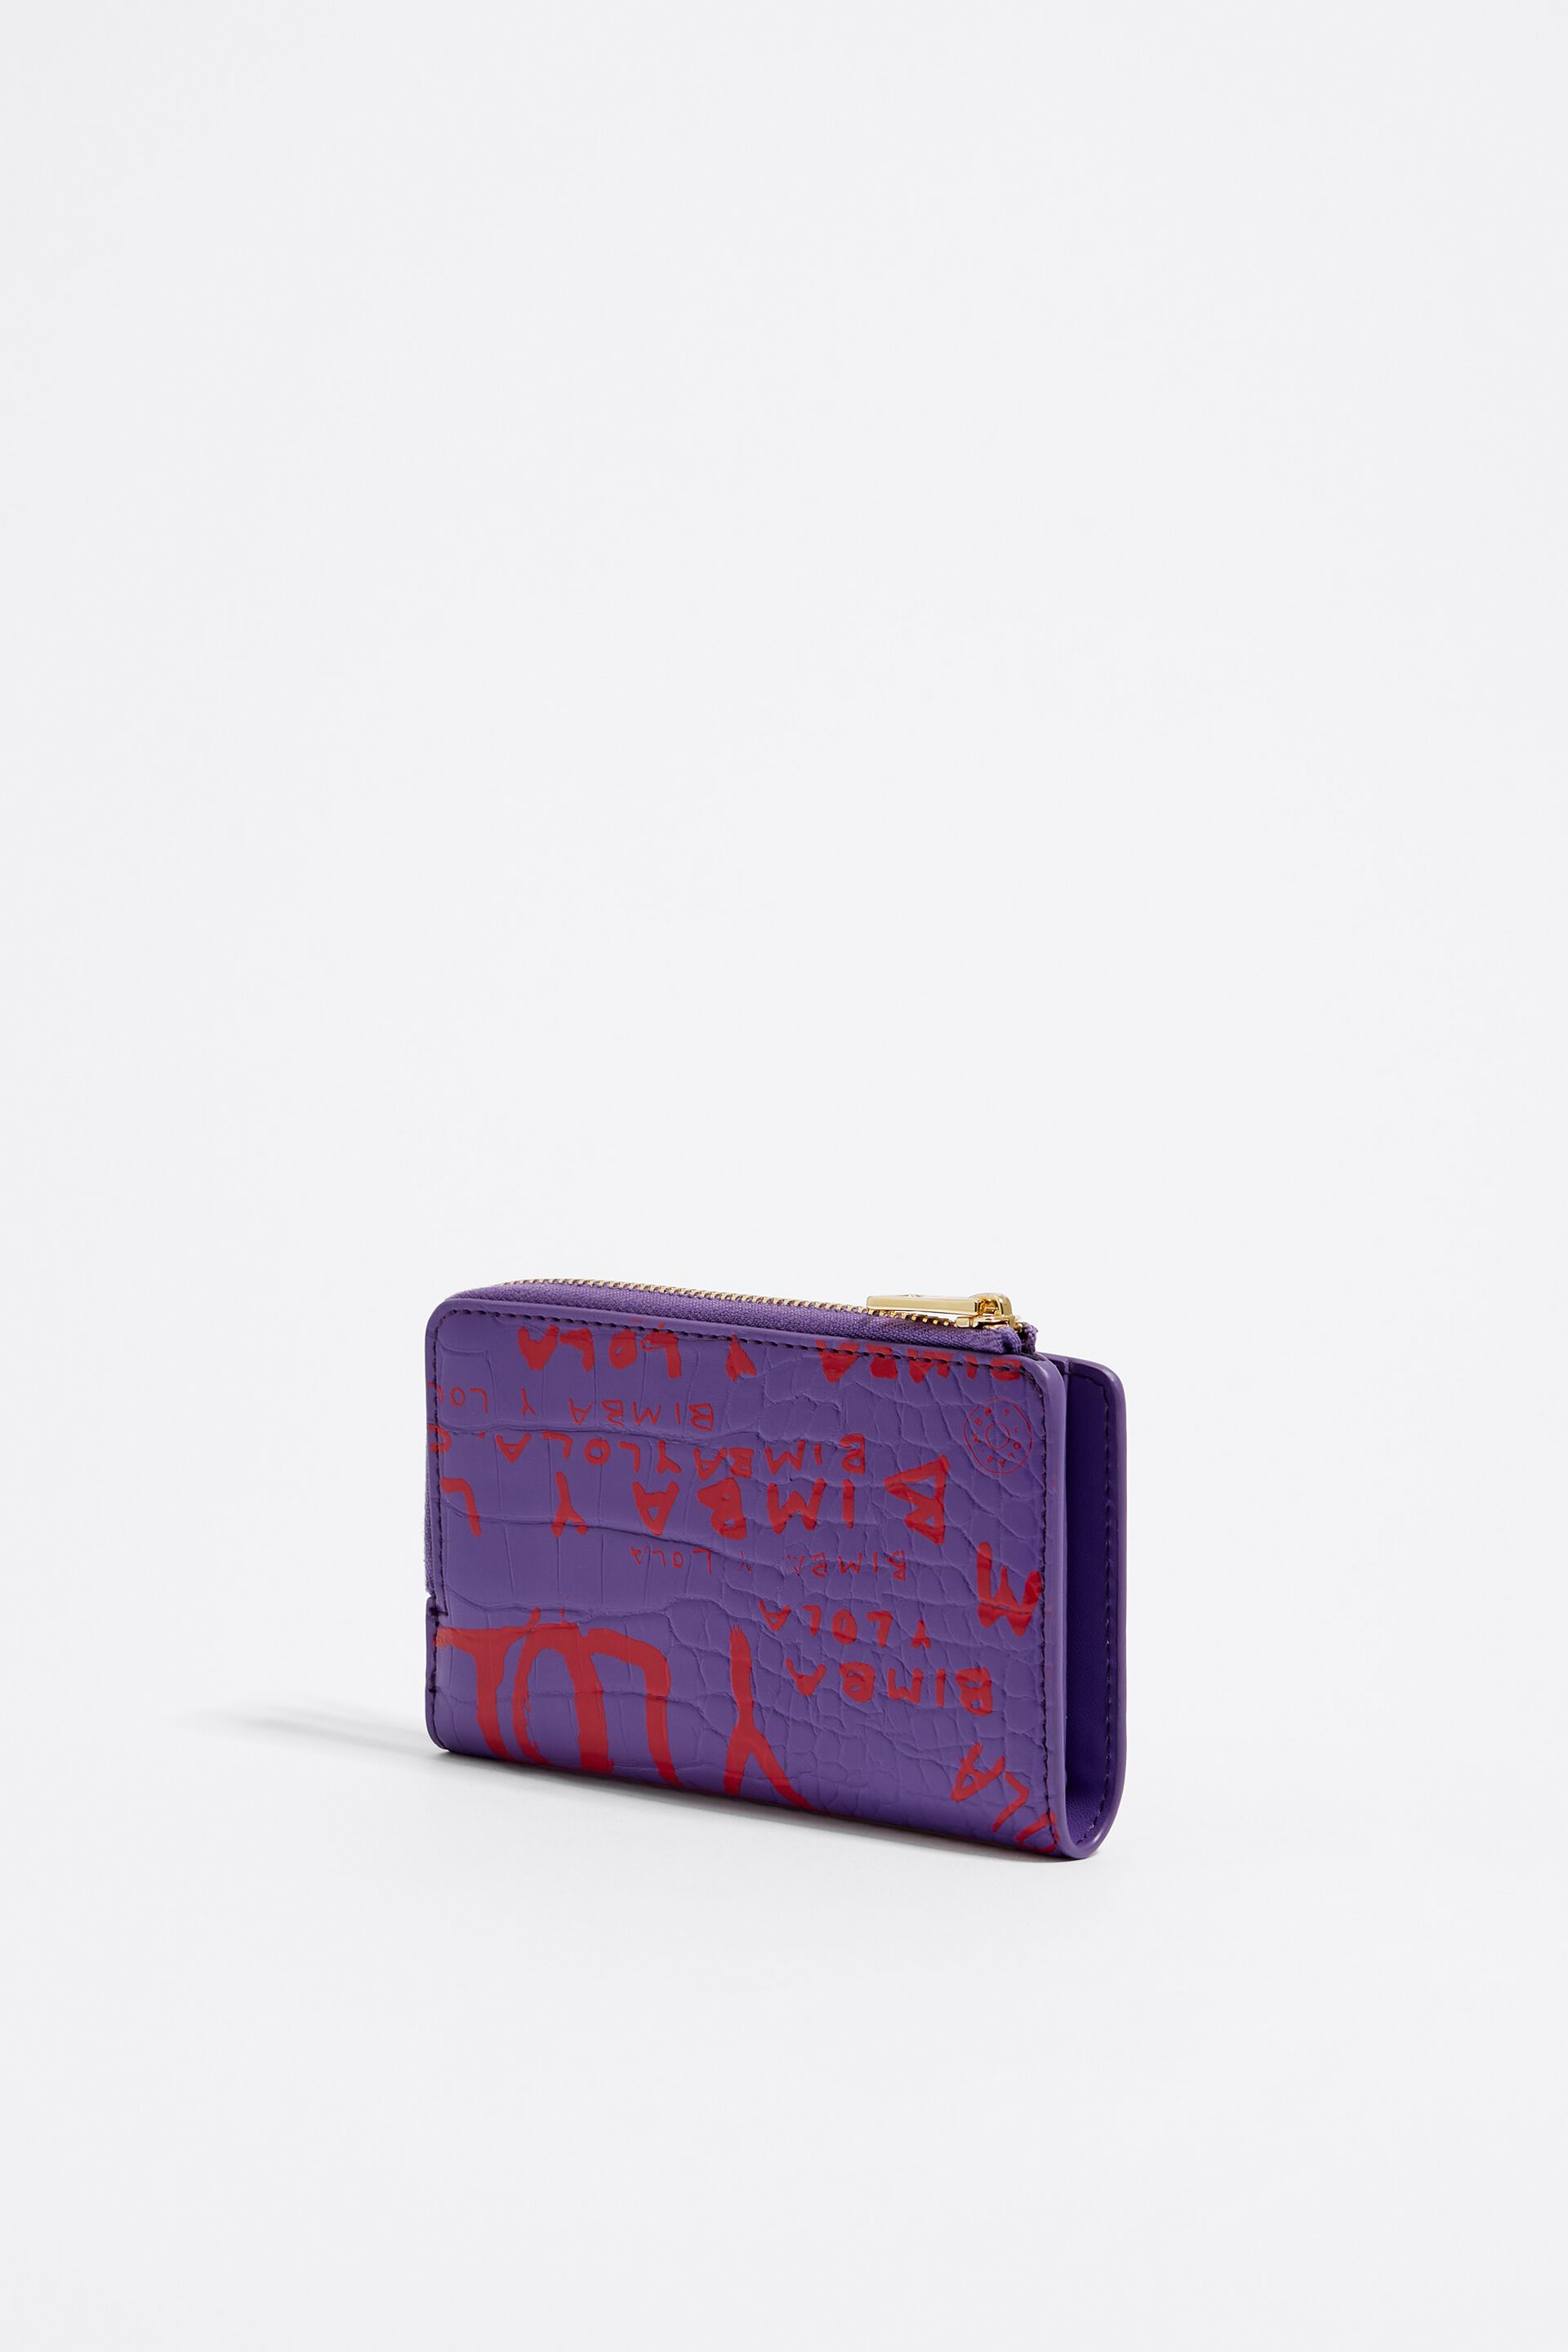 Louis Vuitton Purse Round Fastener Zippy Wallet Monogram M60017